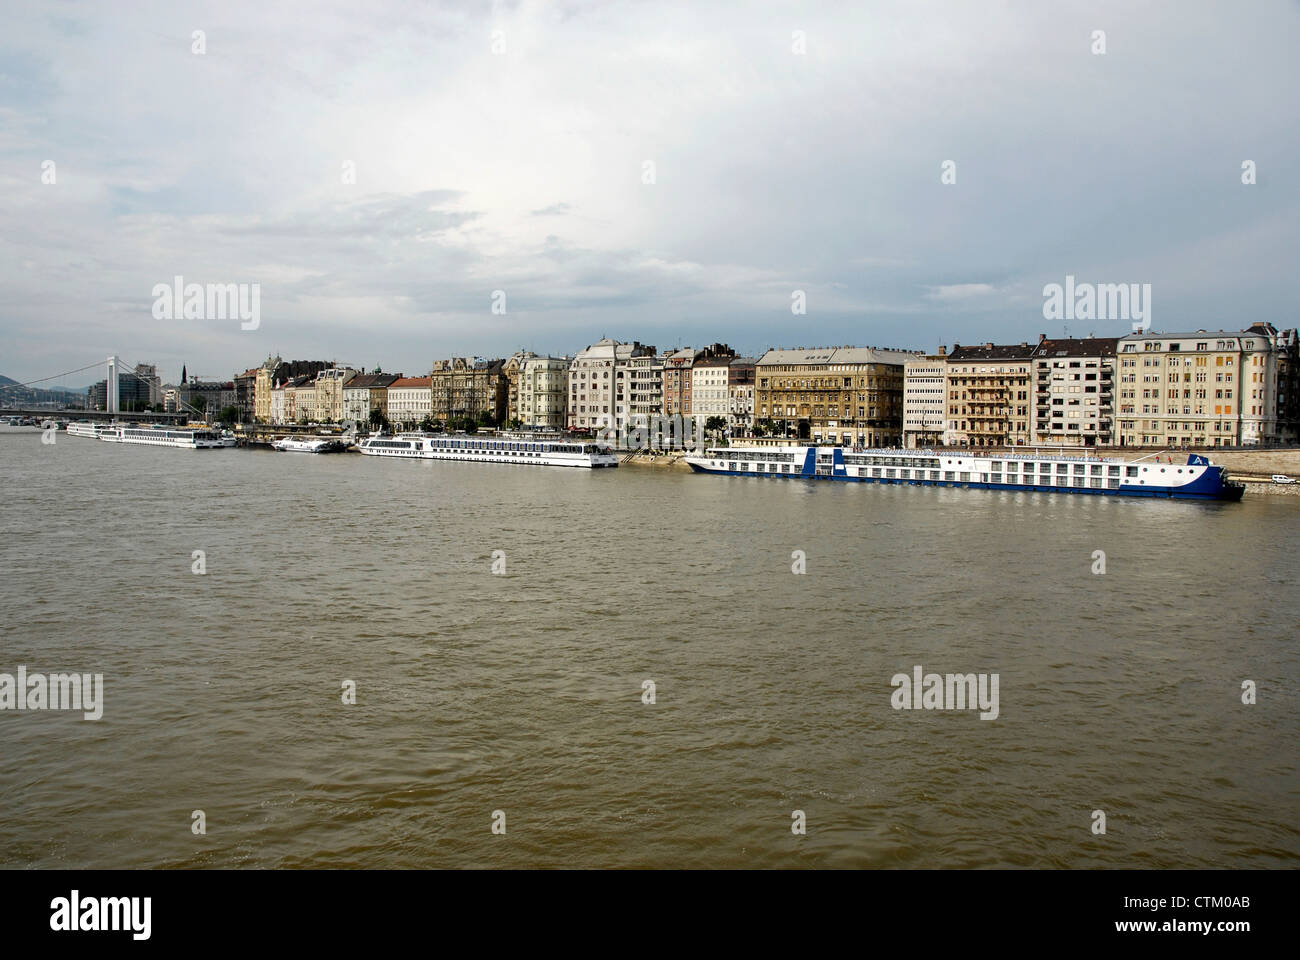 Bateaux de rivière sur le Danube à Budapest, Hongrie Banque D'Images